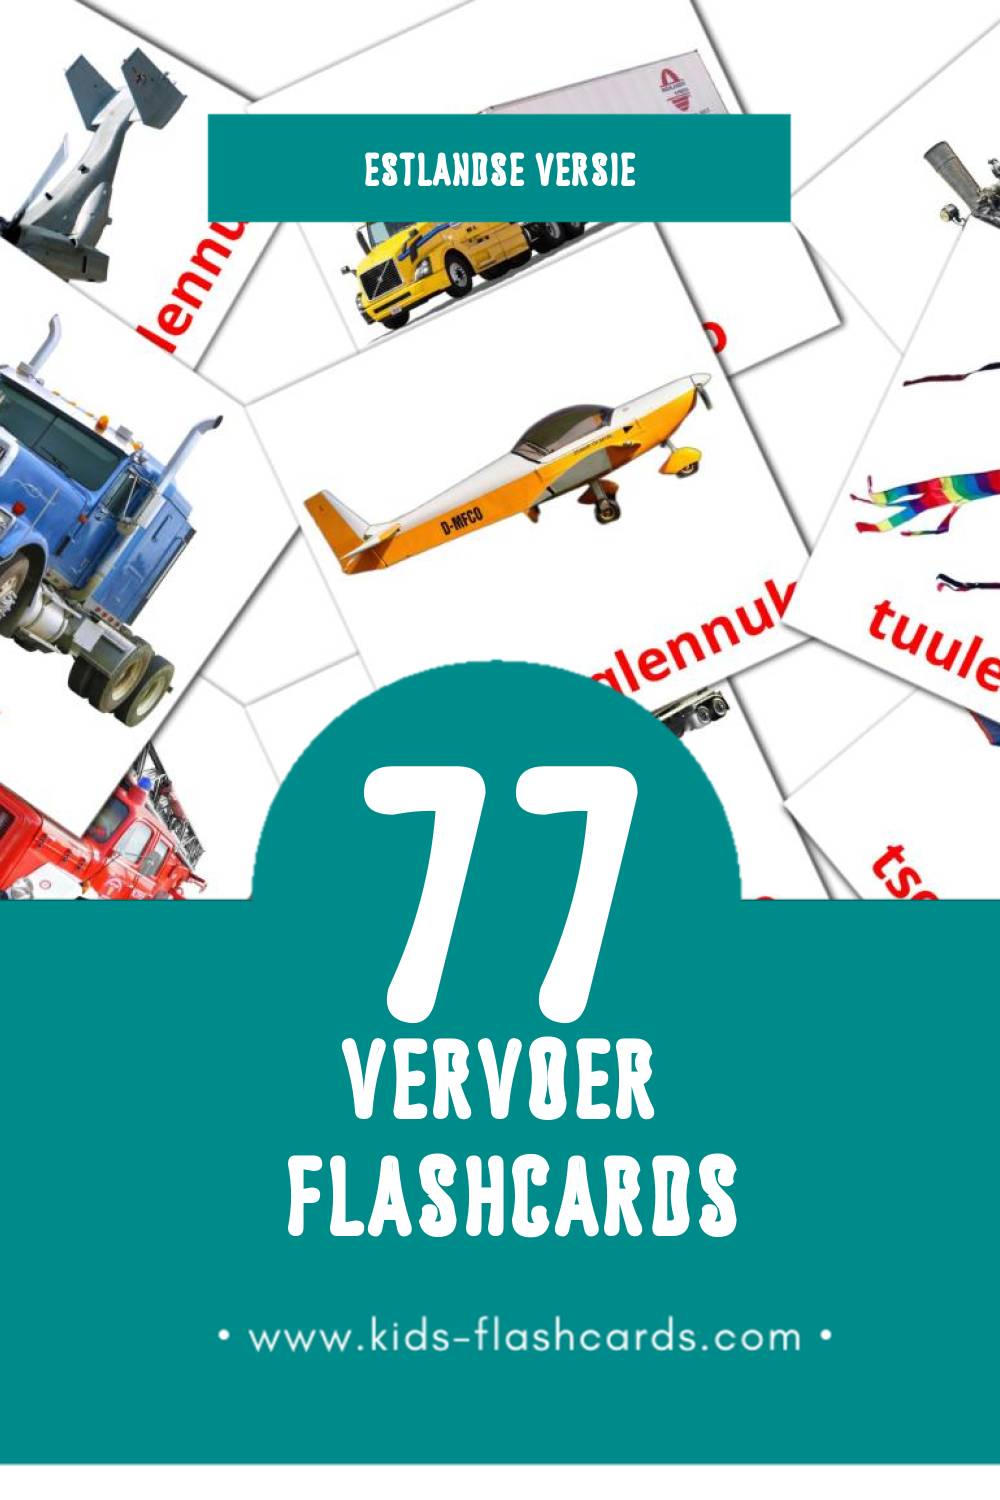 Visuele Transport Flashcards voor Kleuters (77 kaarten in het Estlands)